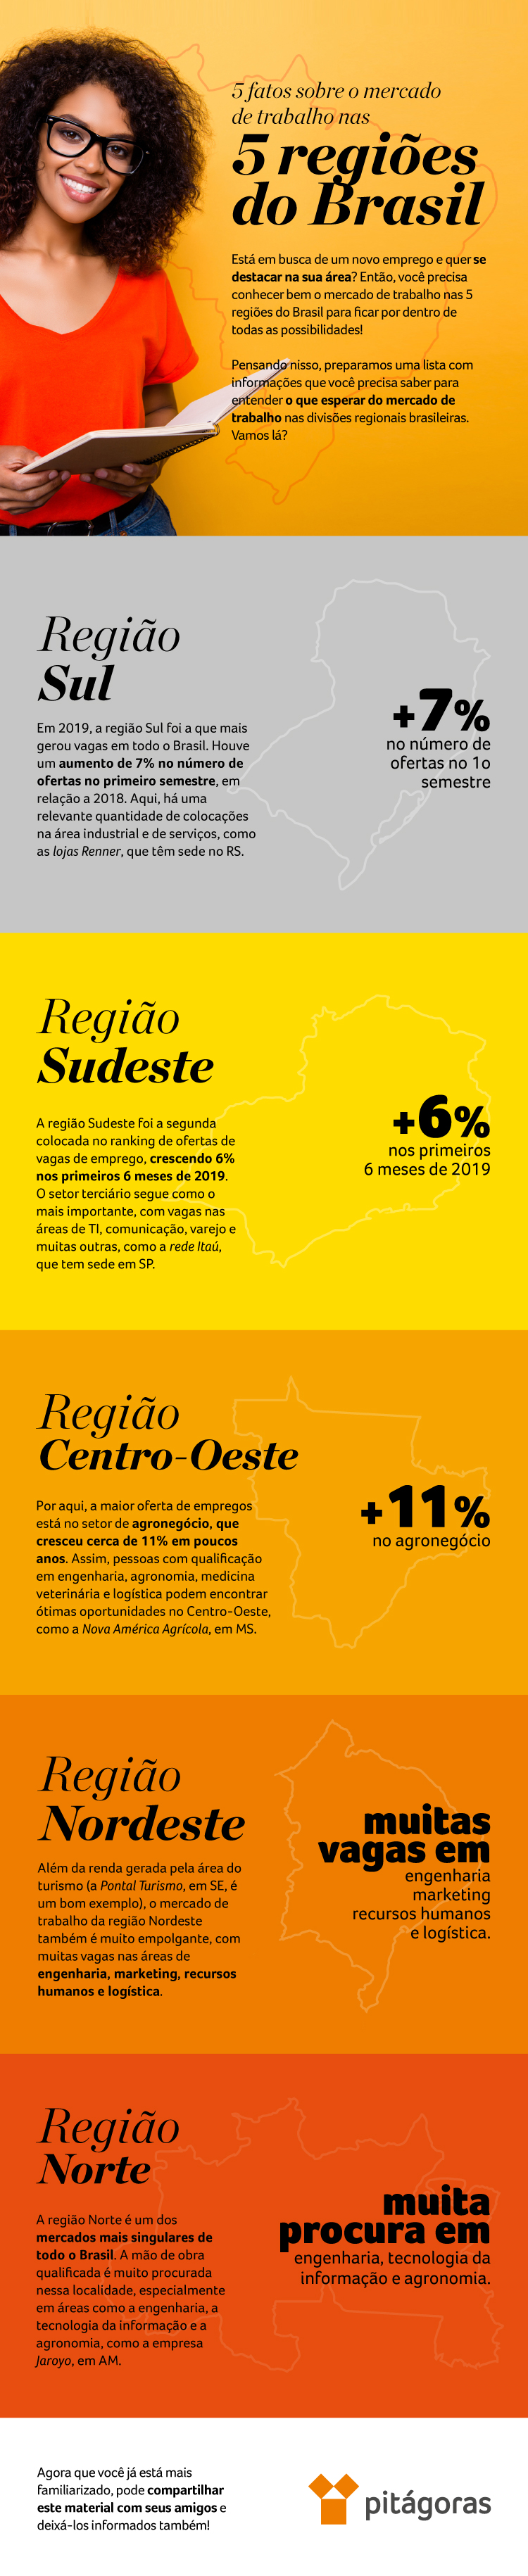 Infográfico: dados sobre o mercado de trabalho nas 5 regiões do Brasil